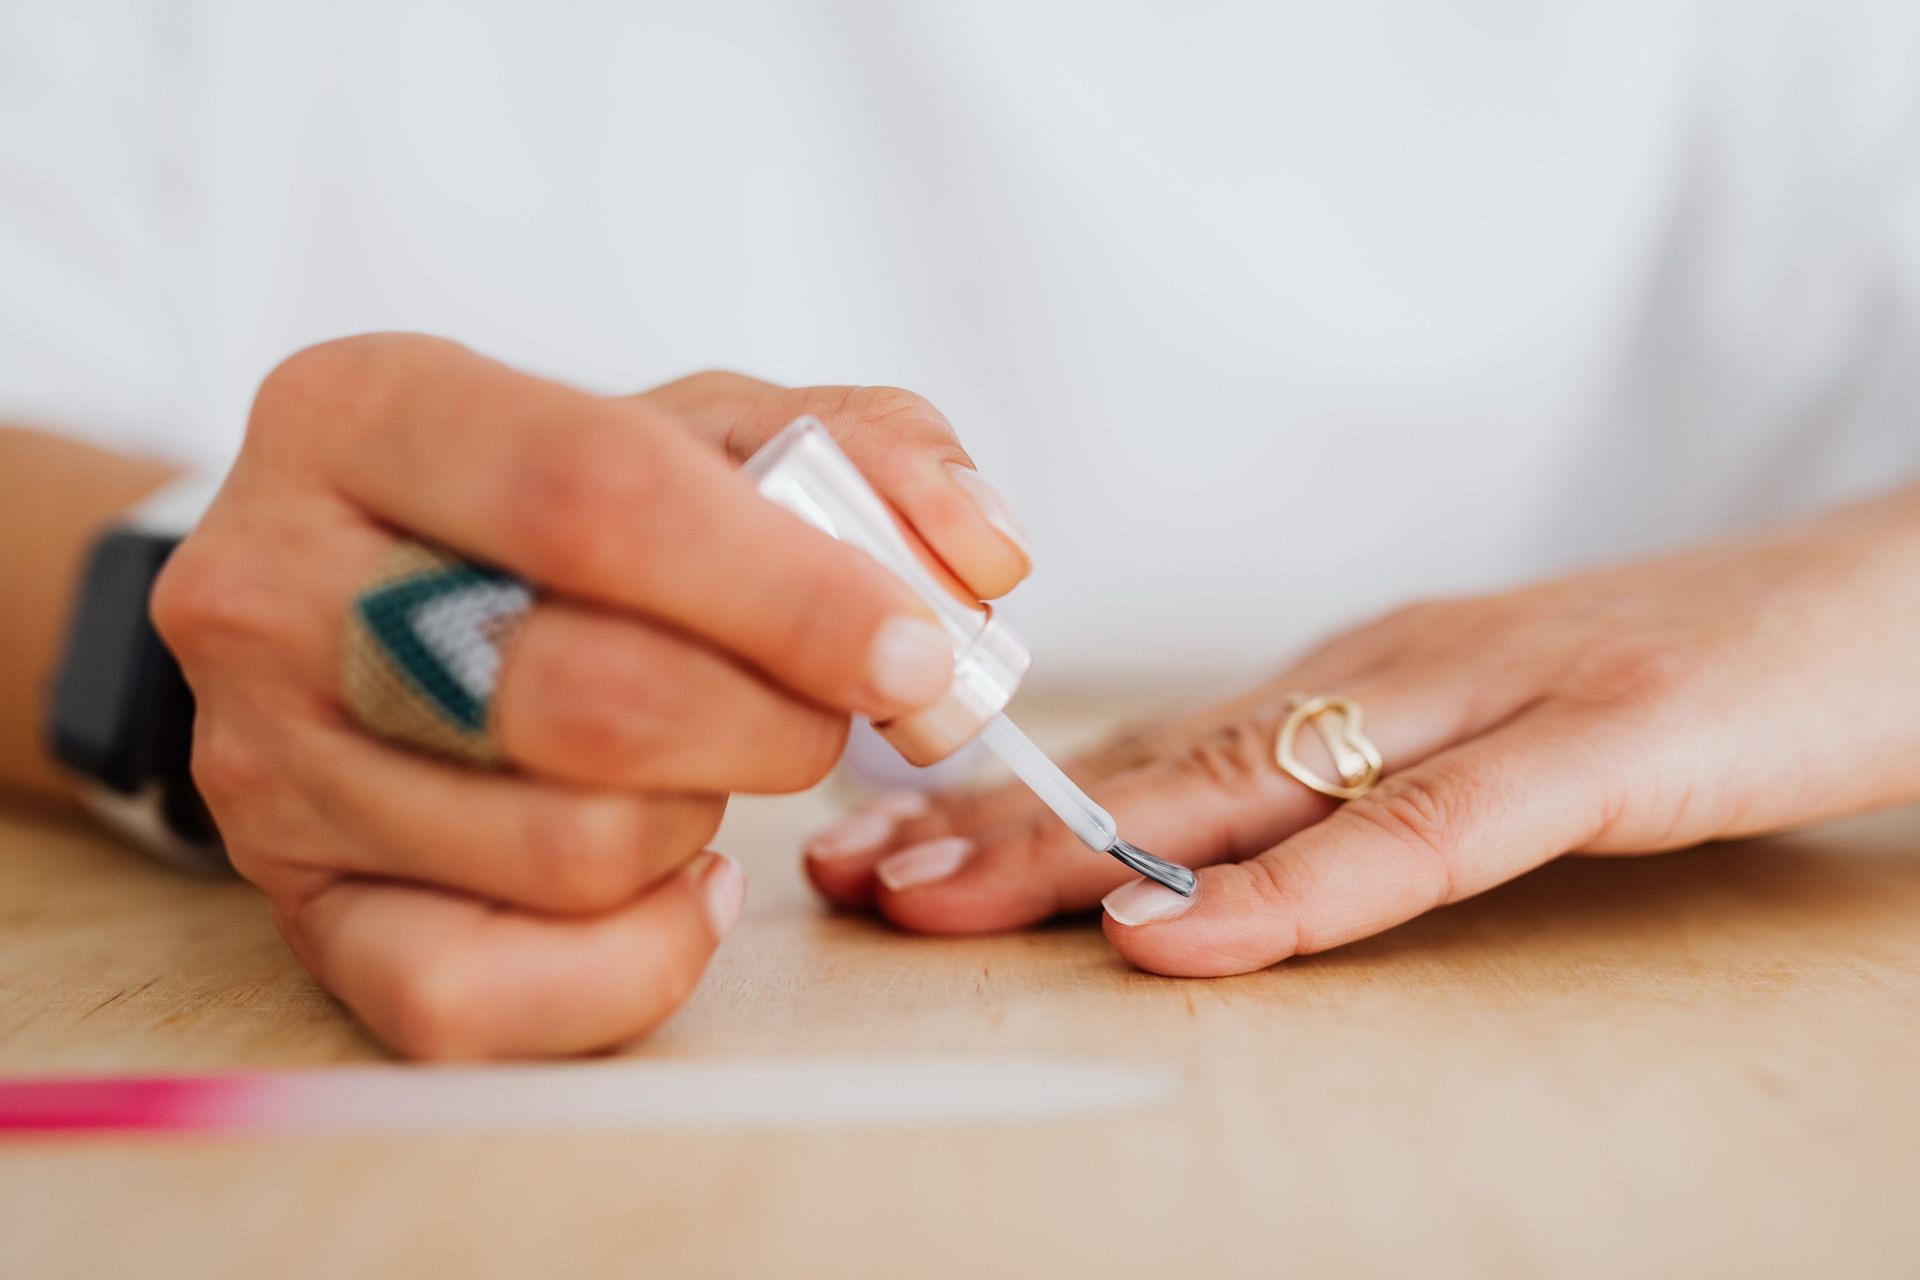 Biotin for nails and cuticle health, (Image via Pexels/ Karolina Grabowska)